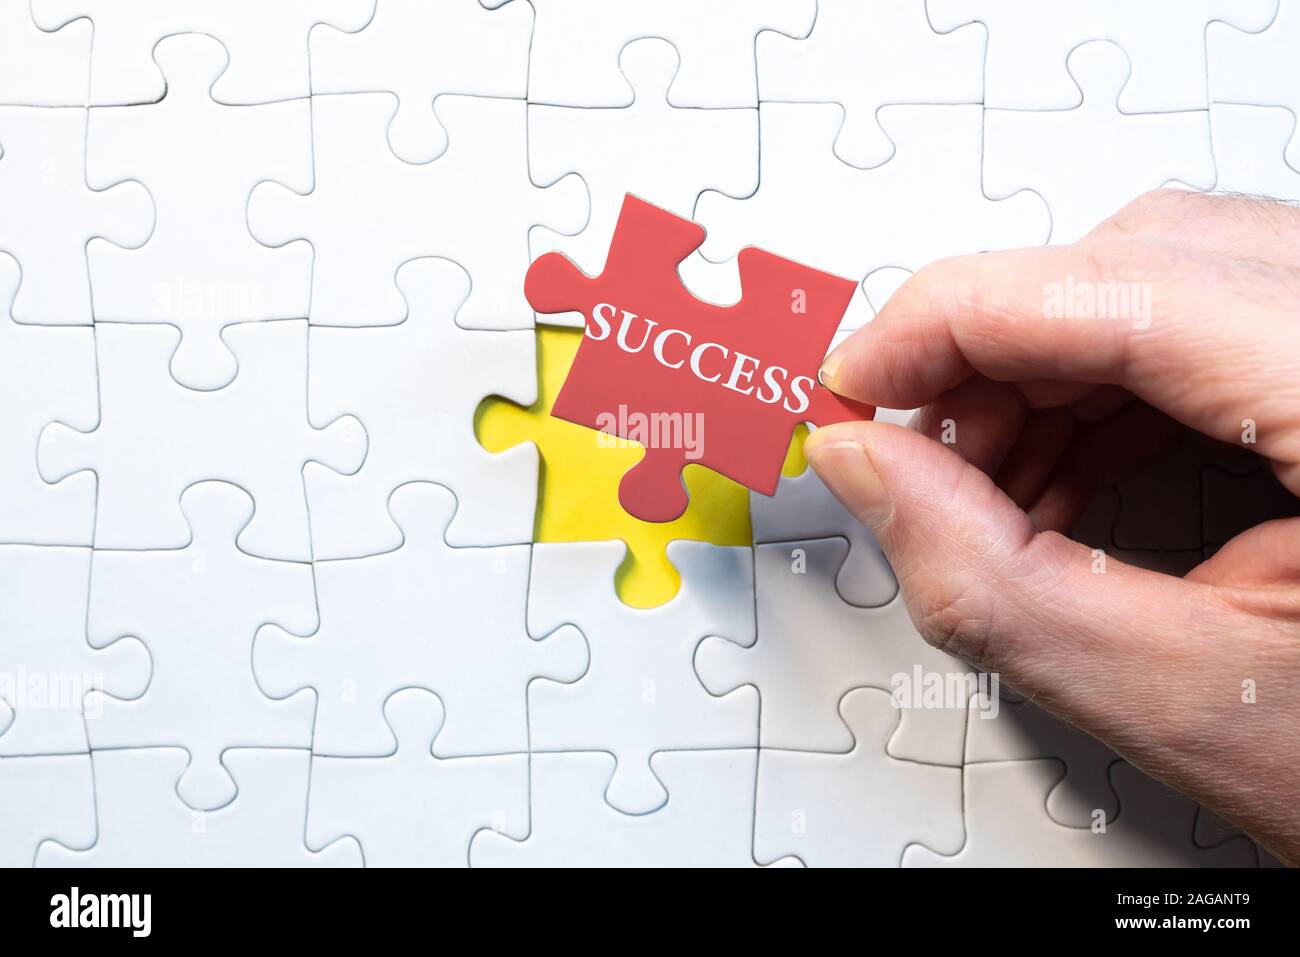 Il successo aziendale concetto, uomo holding ultimo pezzo corrispondente di jigsaw puzzle con successo di parola Foto Stock